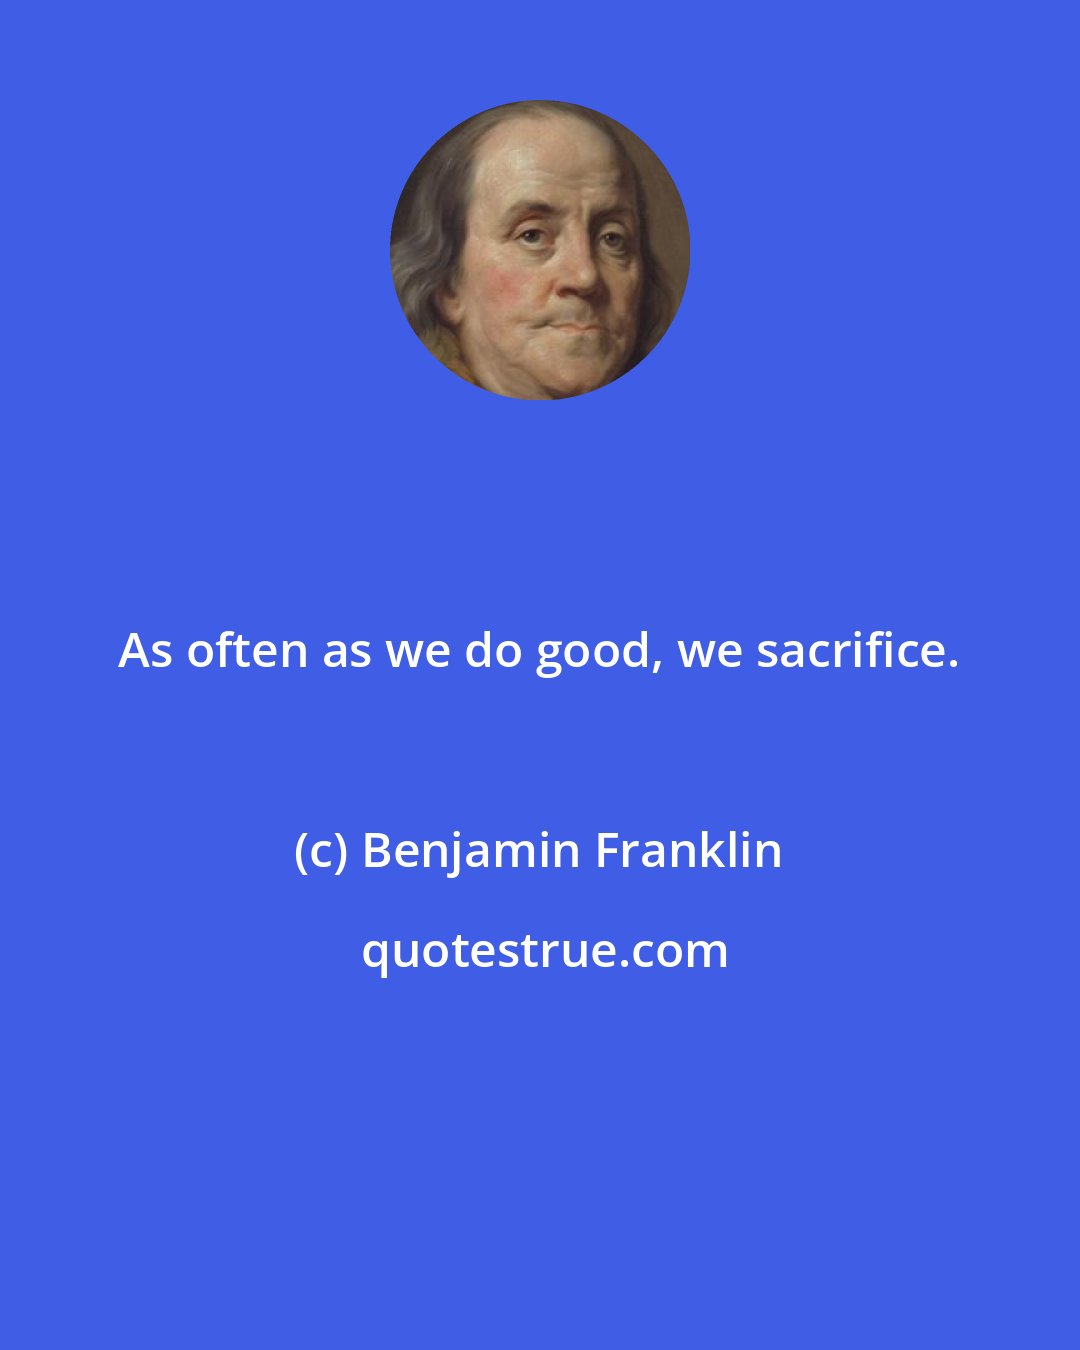 Benjamin Franklin: As often as we do good, we sacrifice.